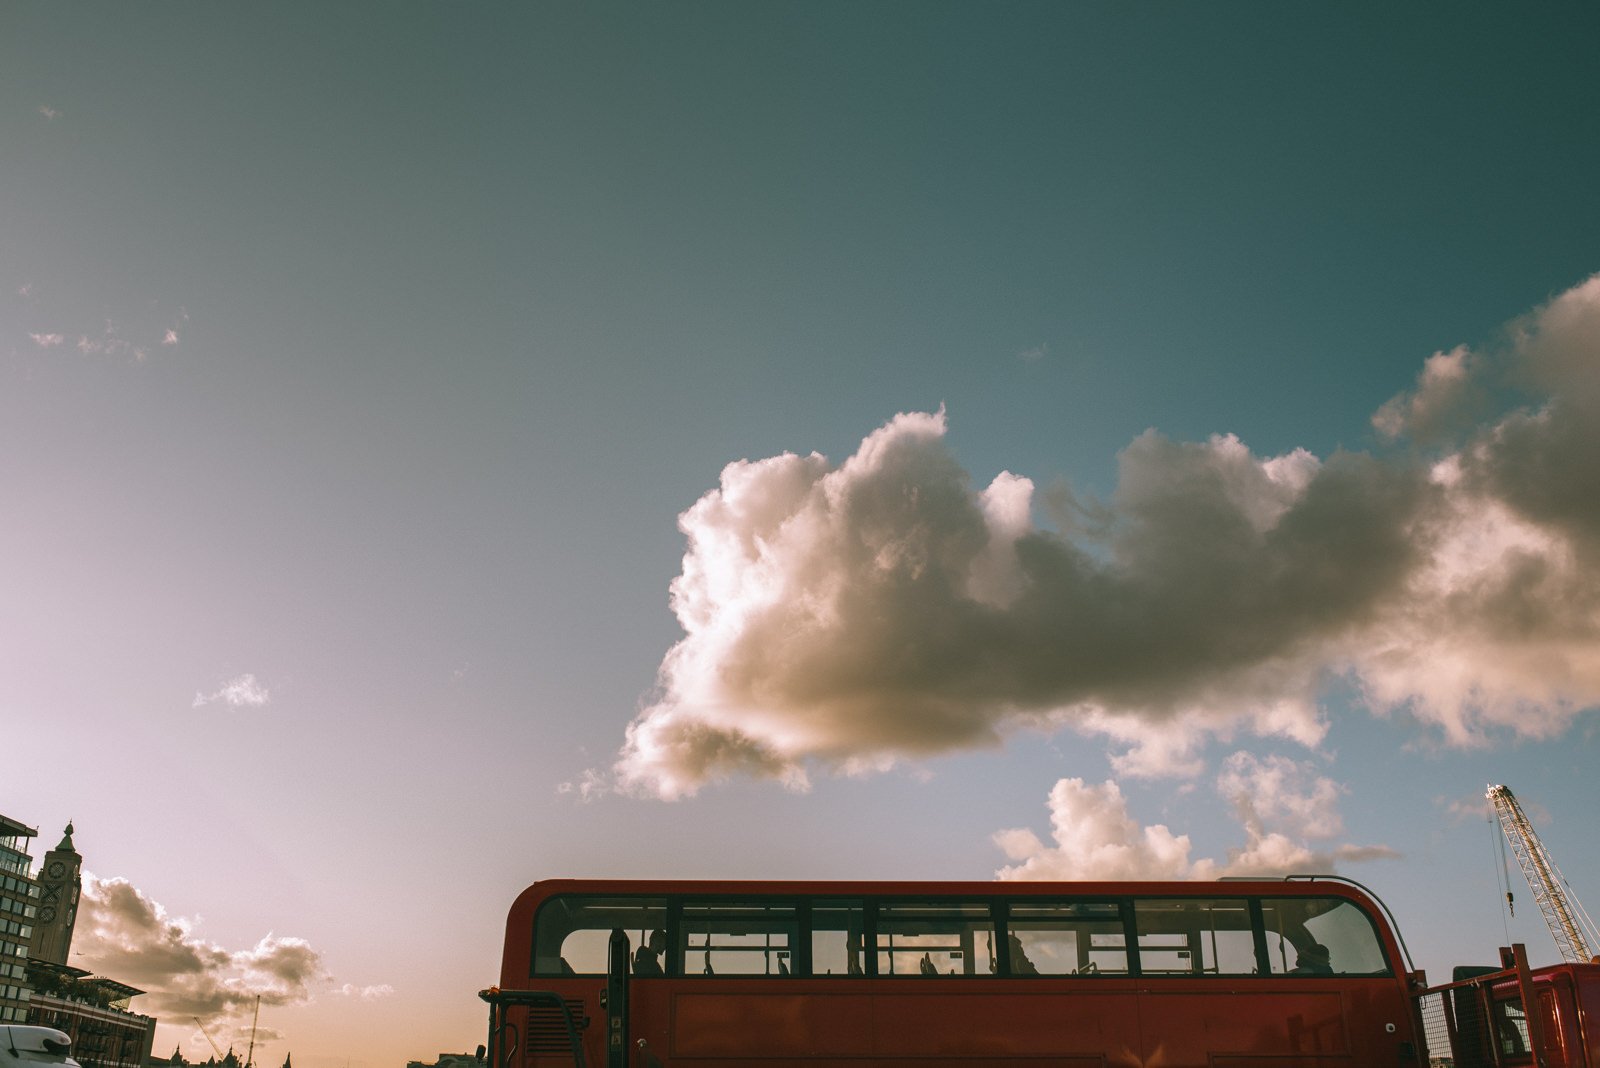 A double-decker bus in London